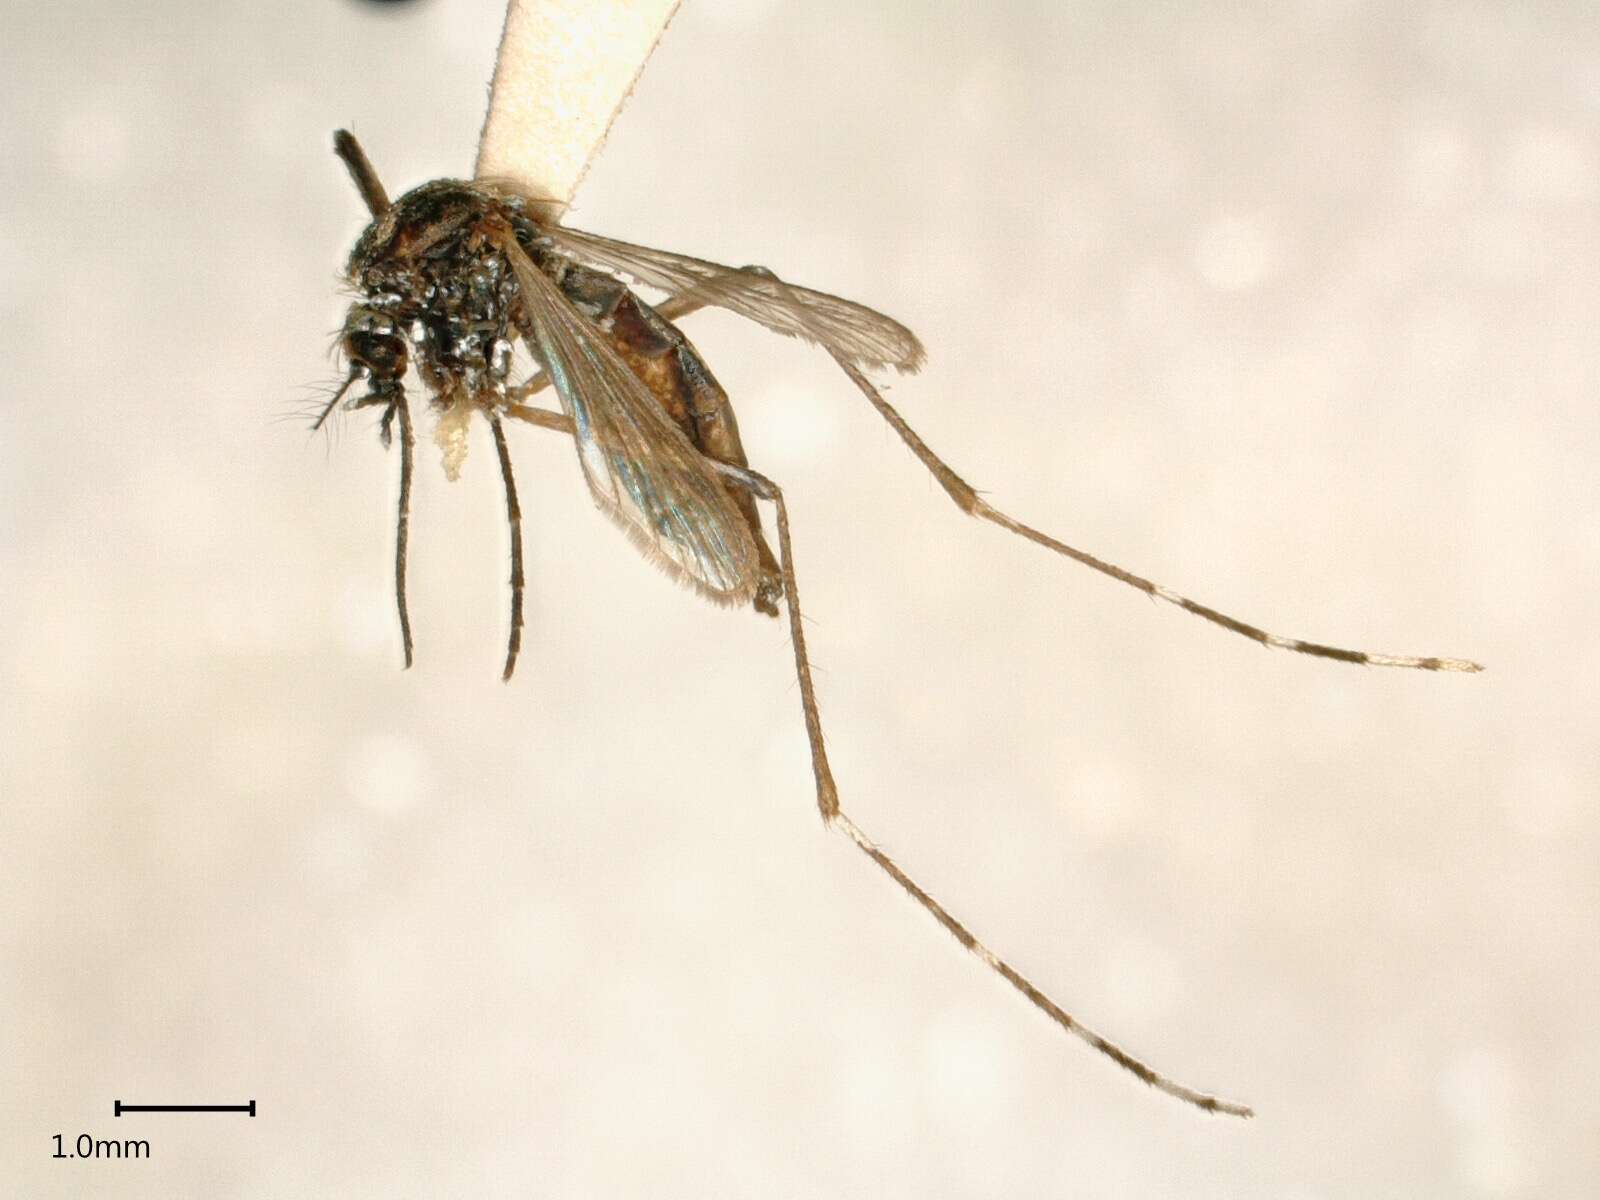 Image of Dengue fever mosquito